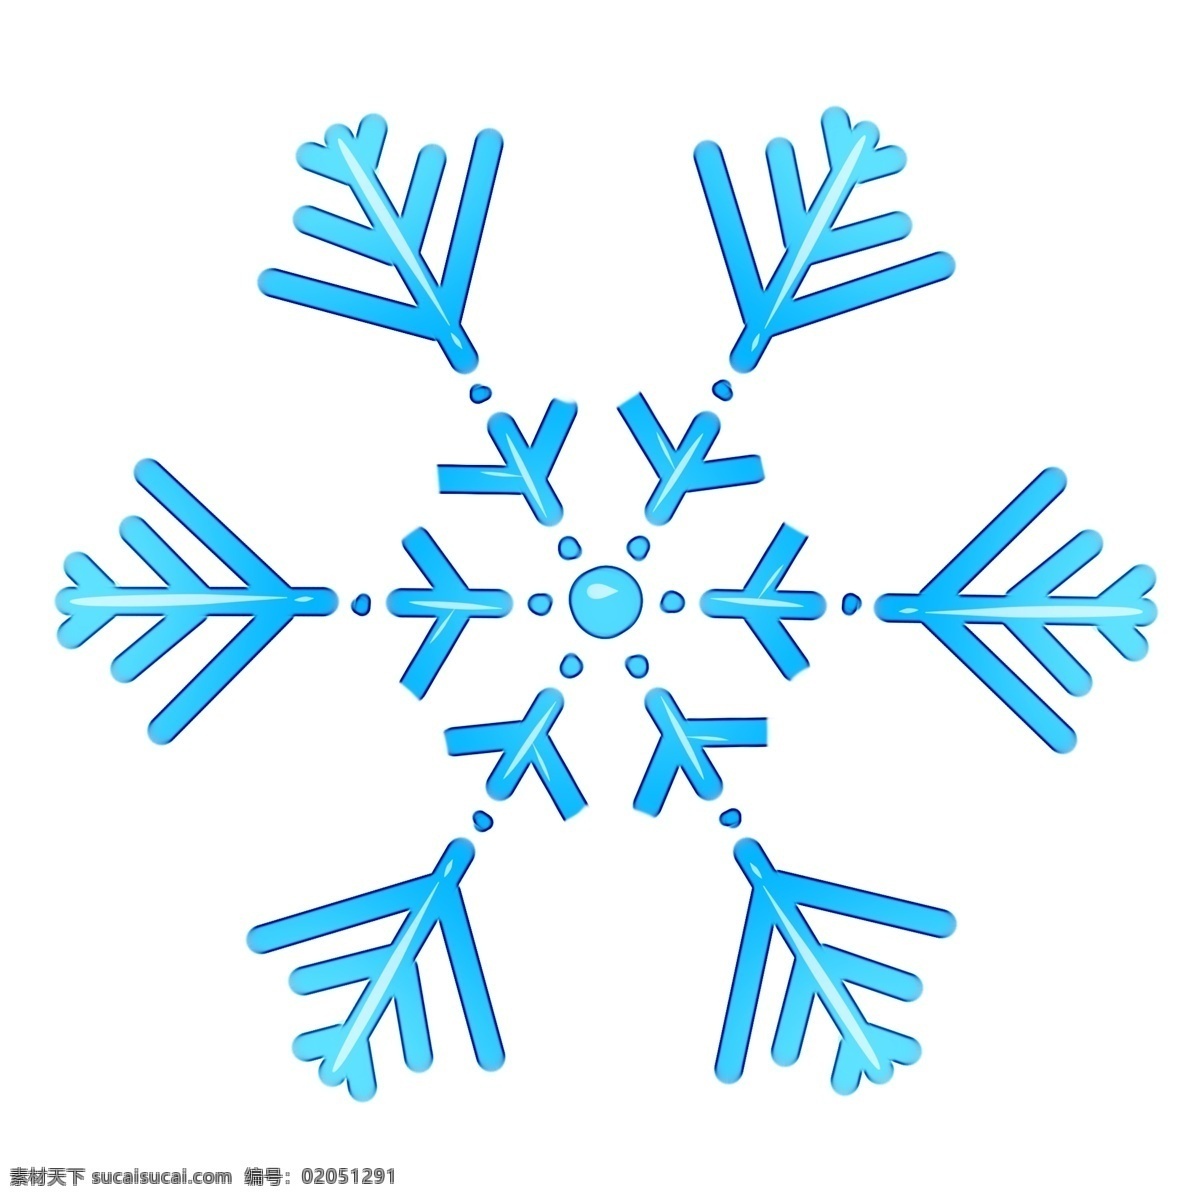 冬日 下雪 晶莹 雪花 冬天下雪 雪花的形状 蓝色雪花 晶莹雪花 亮晶晶的雪花 原创雪花图形 晶莹的雪花